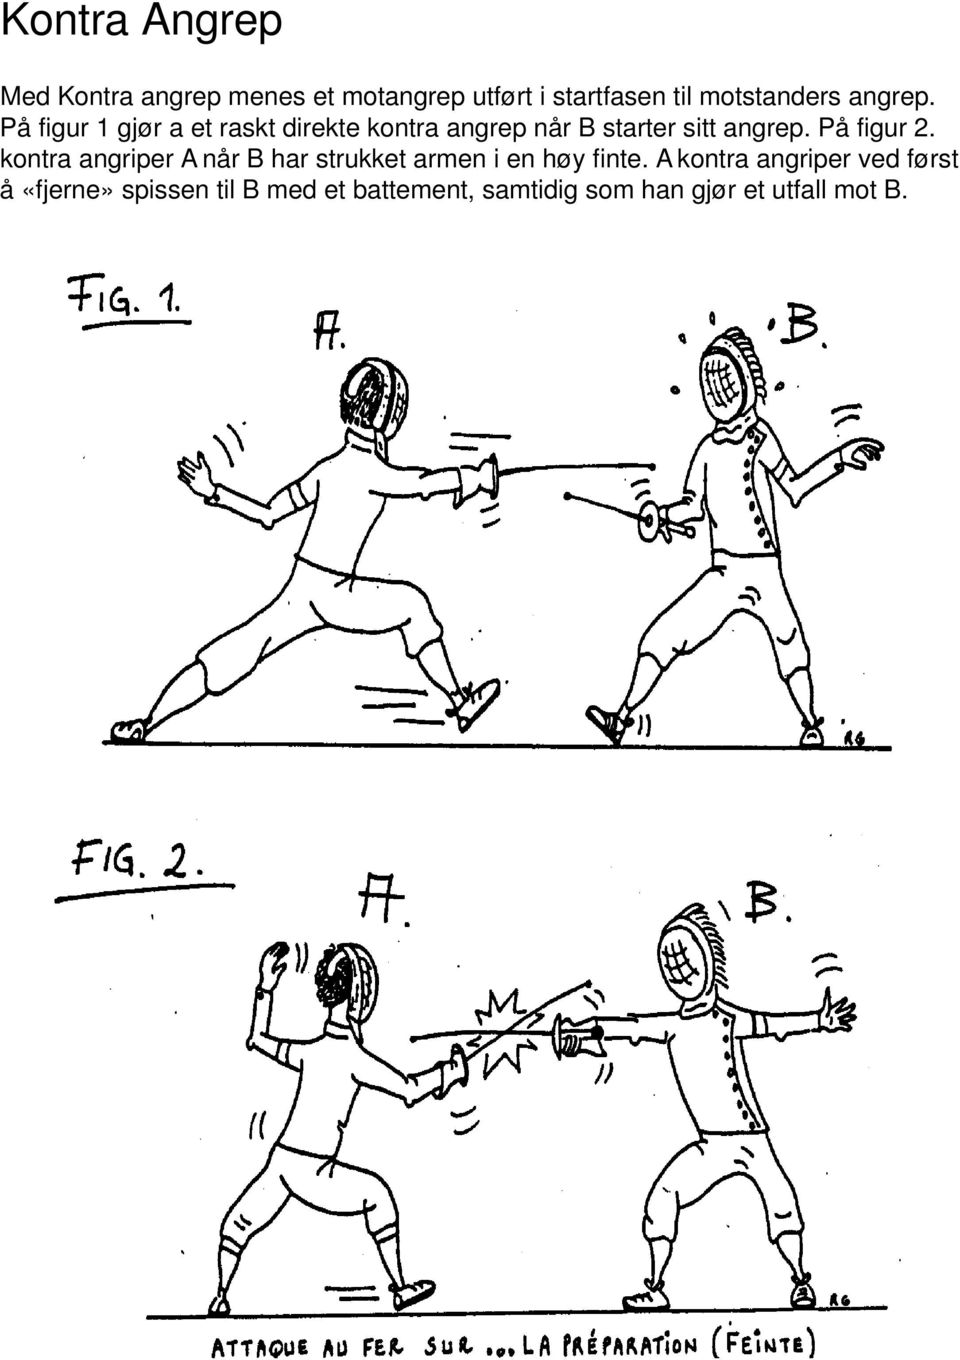 På figur 2. kontra angriper A når B har strukket armen i en høy finte.